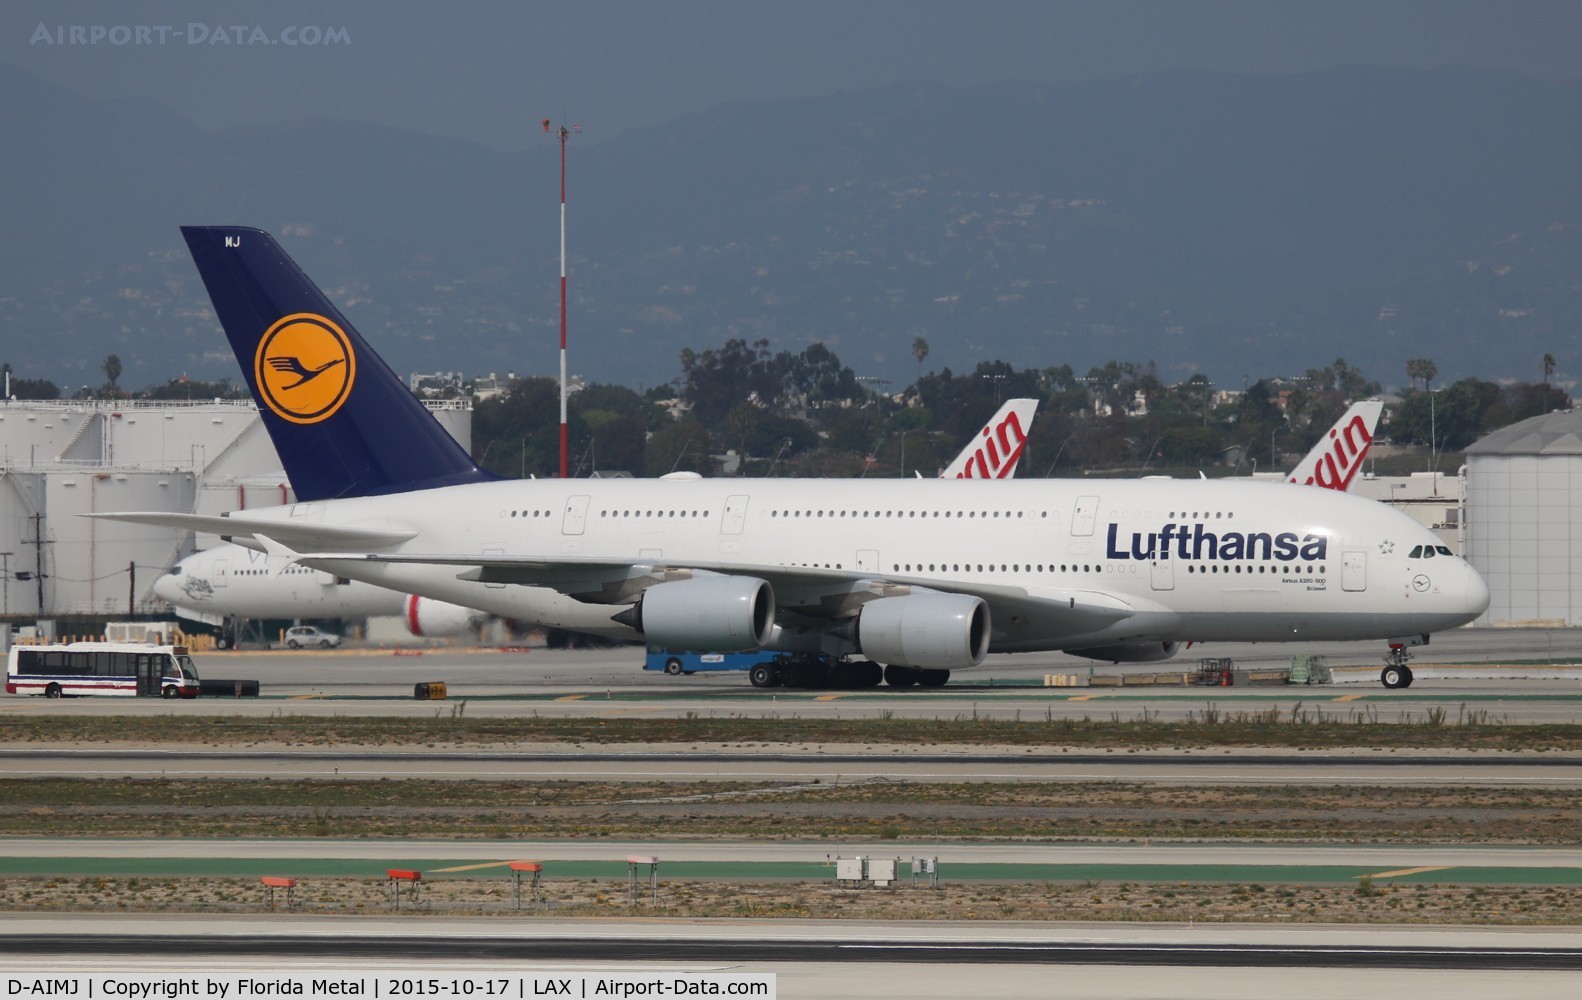 D-AIMJ, 2011 Airbus A380-841 C/N 073, Lufthansa